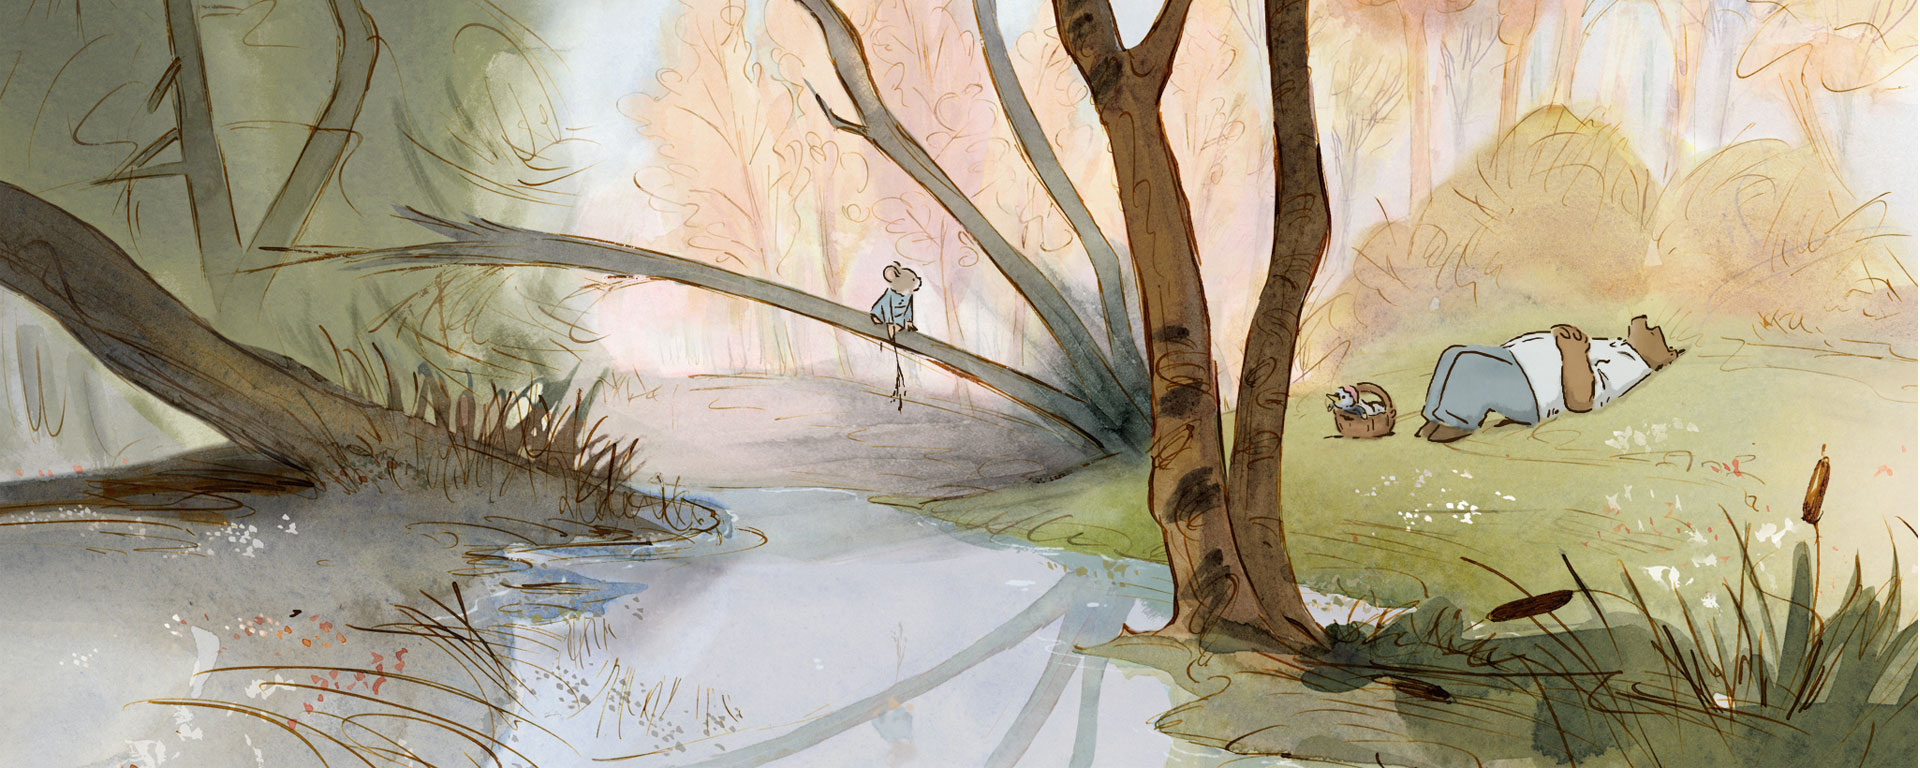 Ein Zeichentrickbild, auf dem eine Maus und ein schlafender Bär an einem Flussufer zu sehen sind.